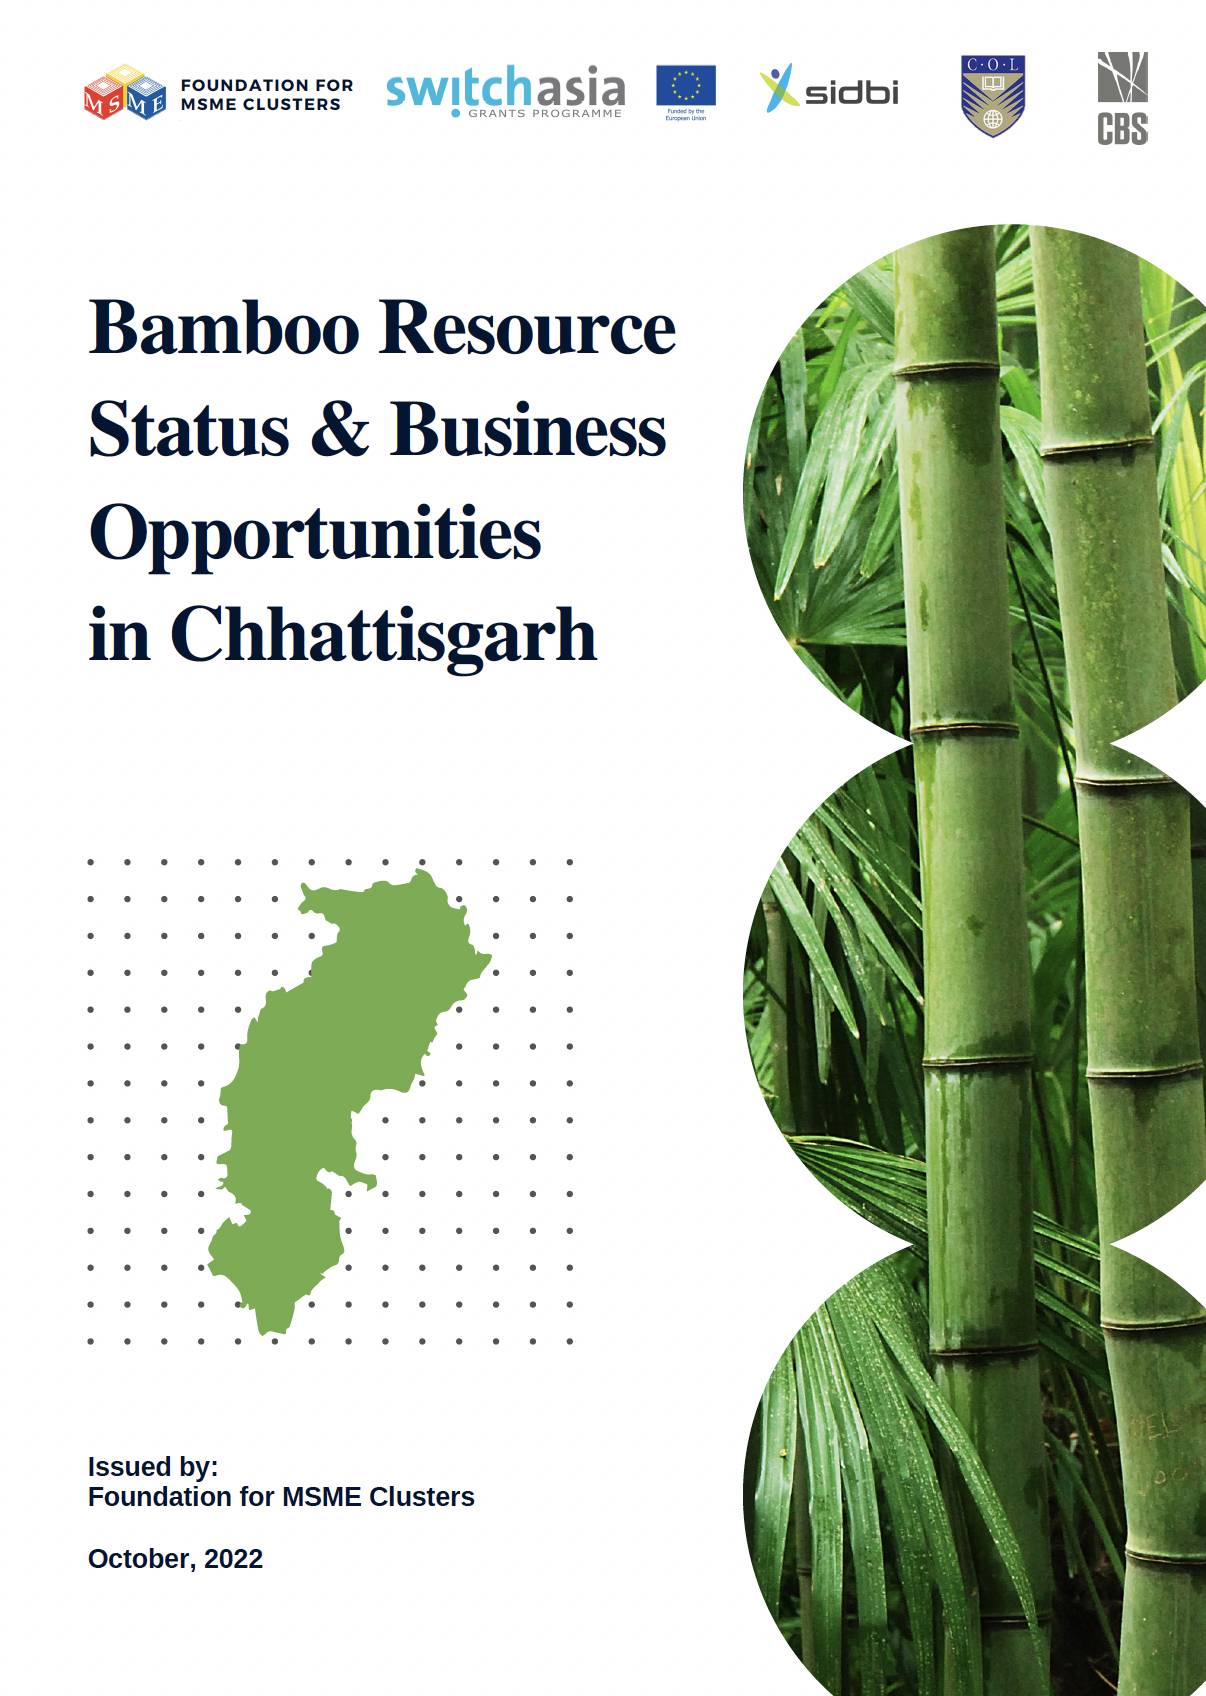 Bamboo Resource Status & Business Opportunities in Chhattisgarh